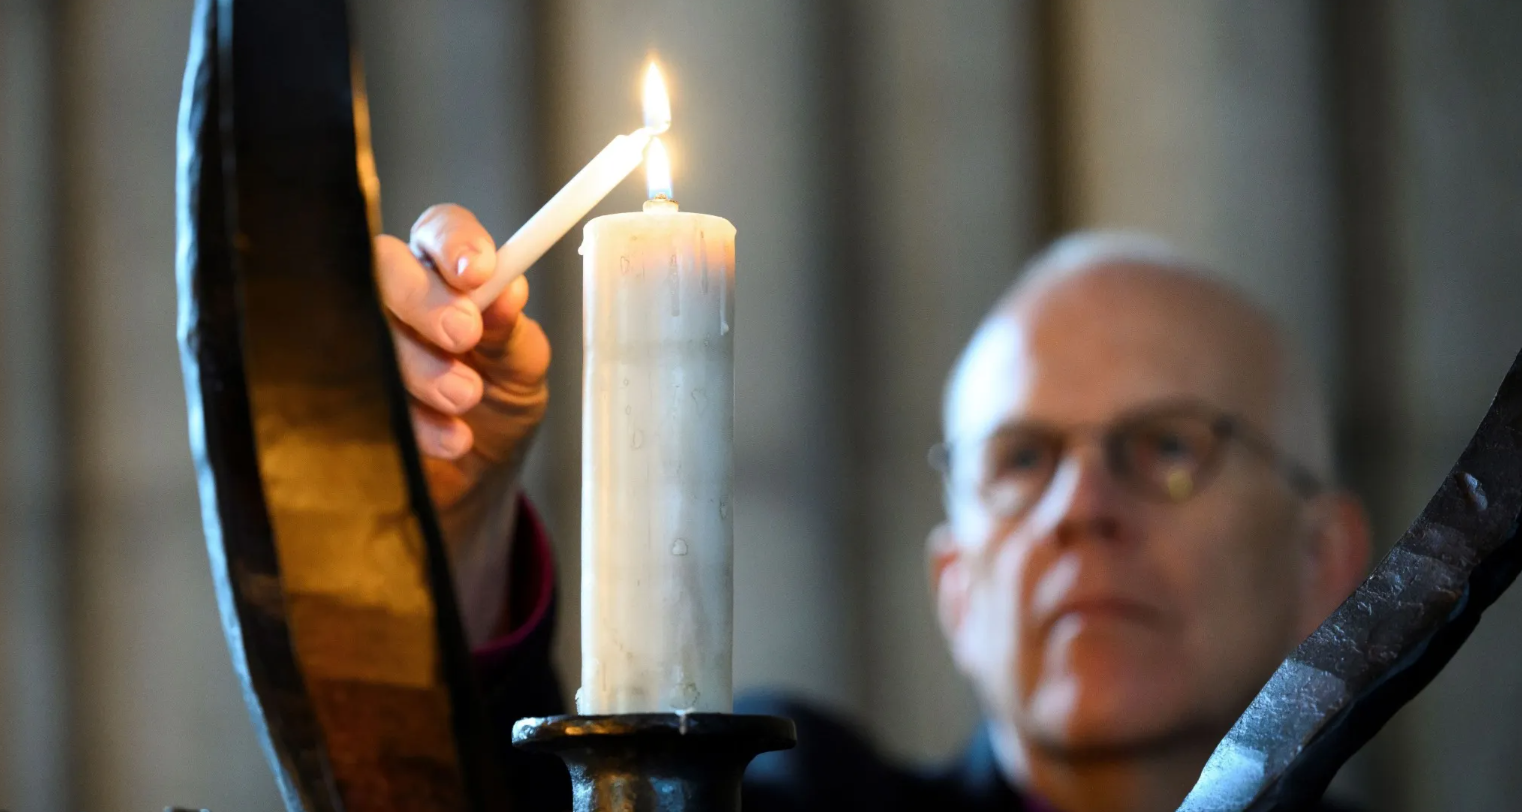 Ärkebiskop Martin Modéus tänder ett ljus i en ljusbärare.